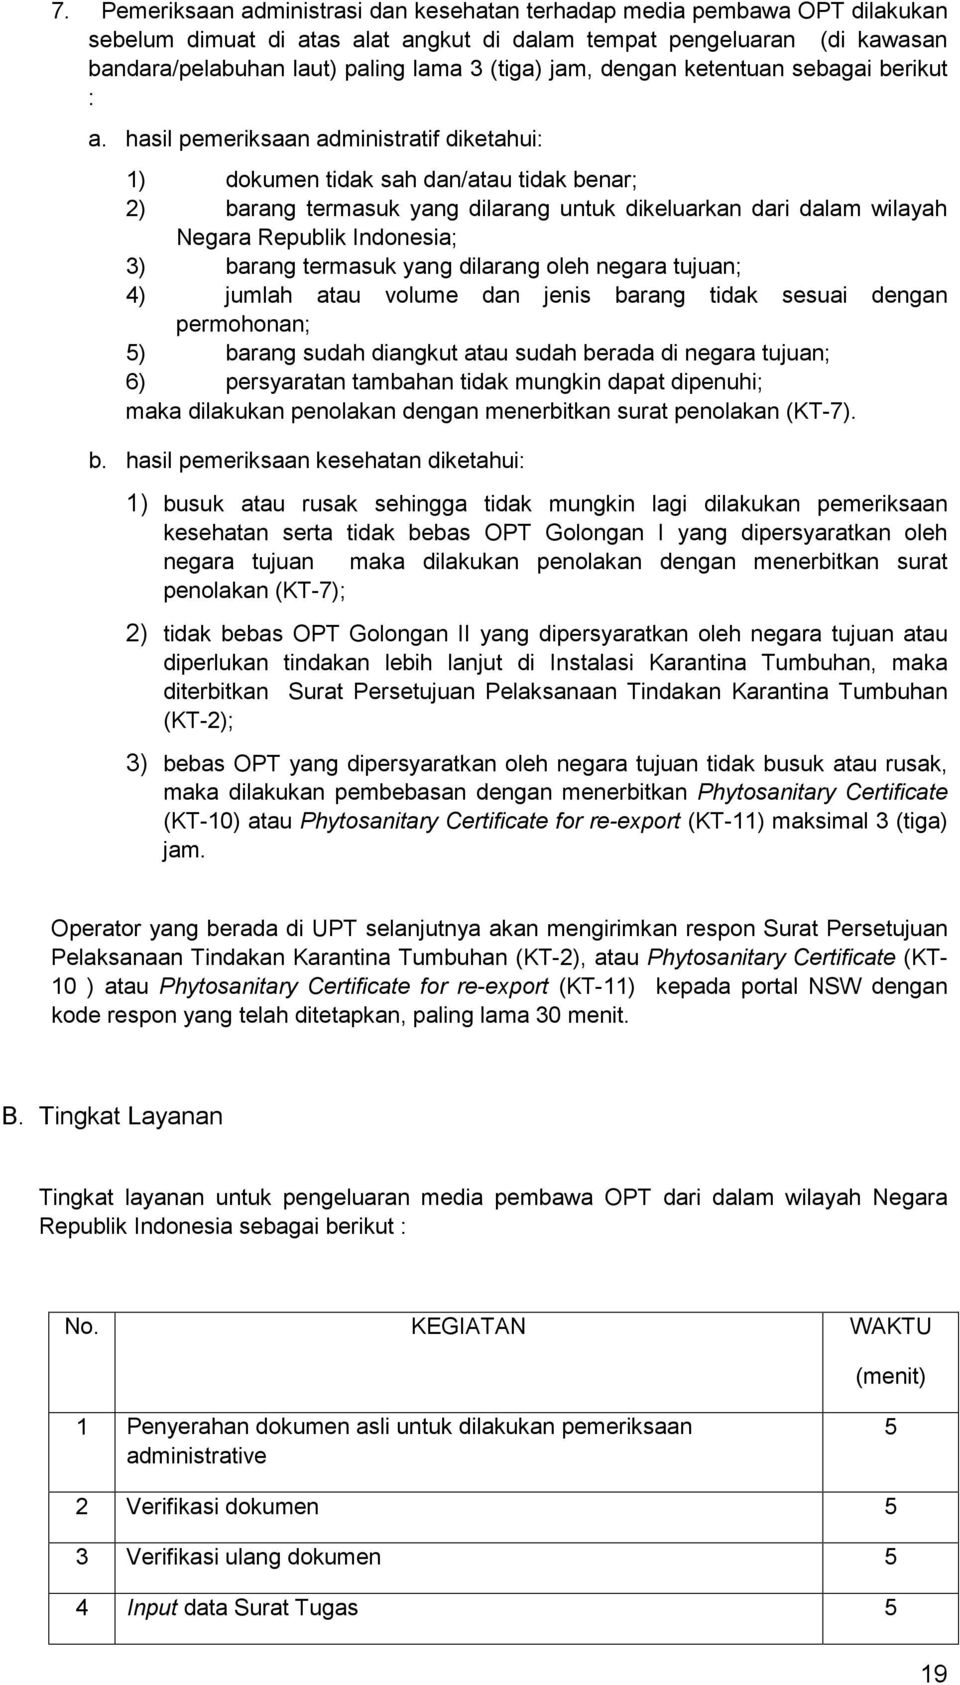 hasil pemeriksaan administratif diketahui: 1) dokumen tidak sah dan/atau tidak benar; 2) barang termasuk yang dilarang untuk dikeluarkan dari dalam wilayah Negara Republik Indonesia; 3) barang